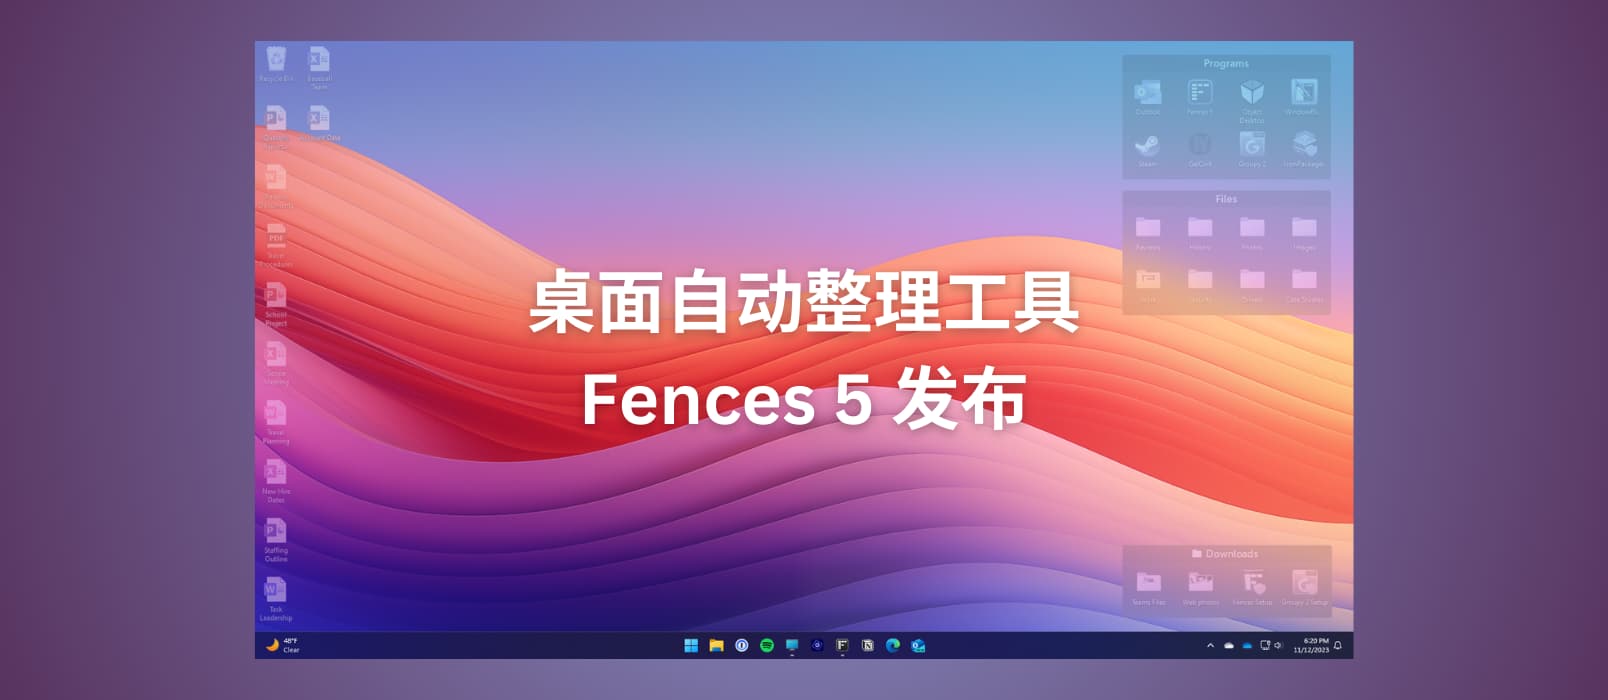 桌面自动整理工具 Fences 5 发布，可将图标融合到壁纸中[Windows]  小众软件